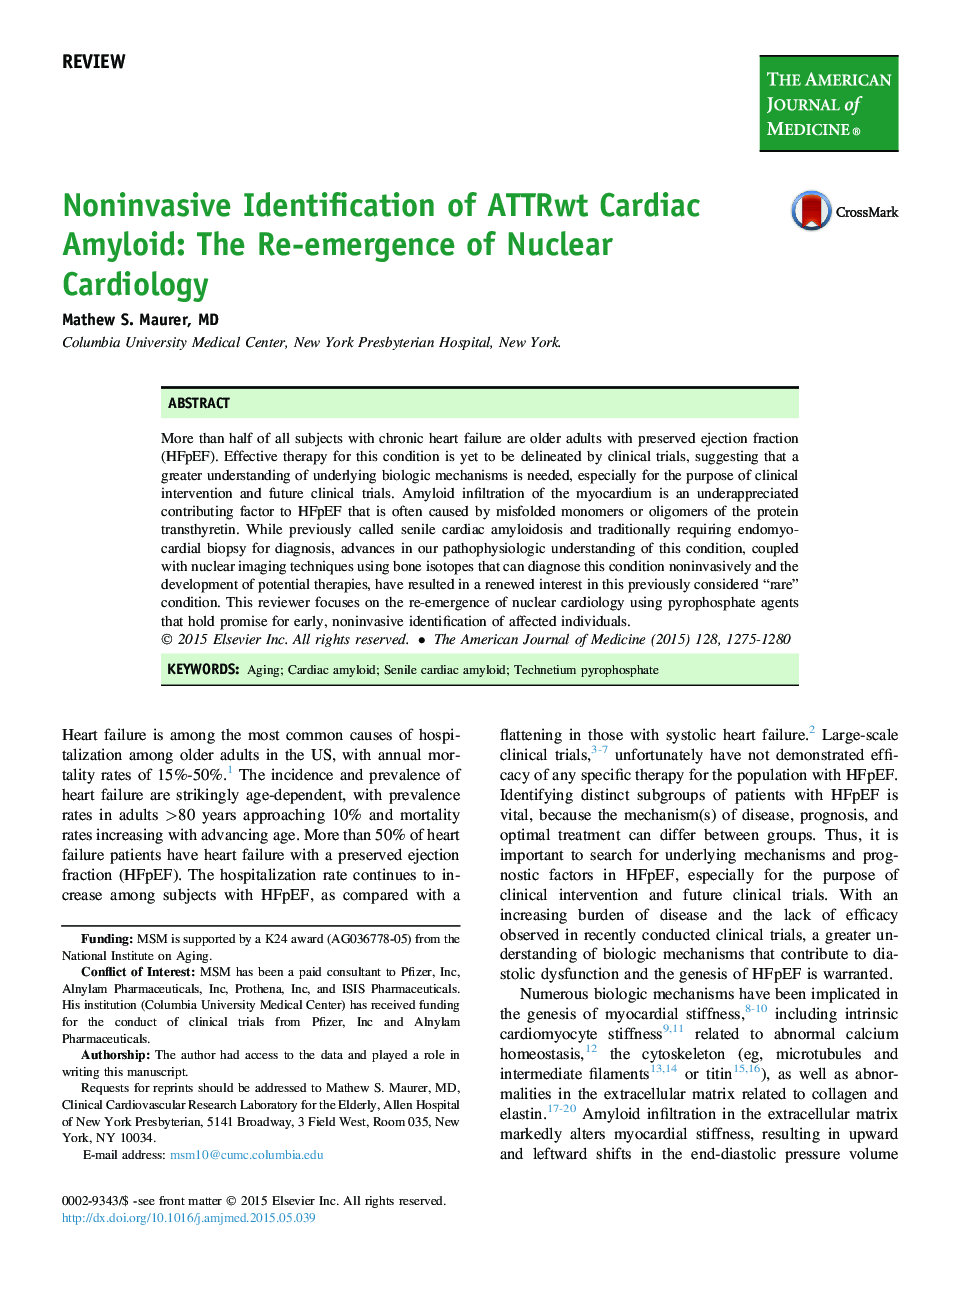 شناسایی غیرمخرب از آمیلوئید قلبی ATTRwt: ظهور دوباره قلب‌شناسی هسته ای